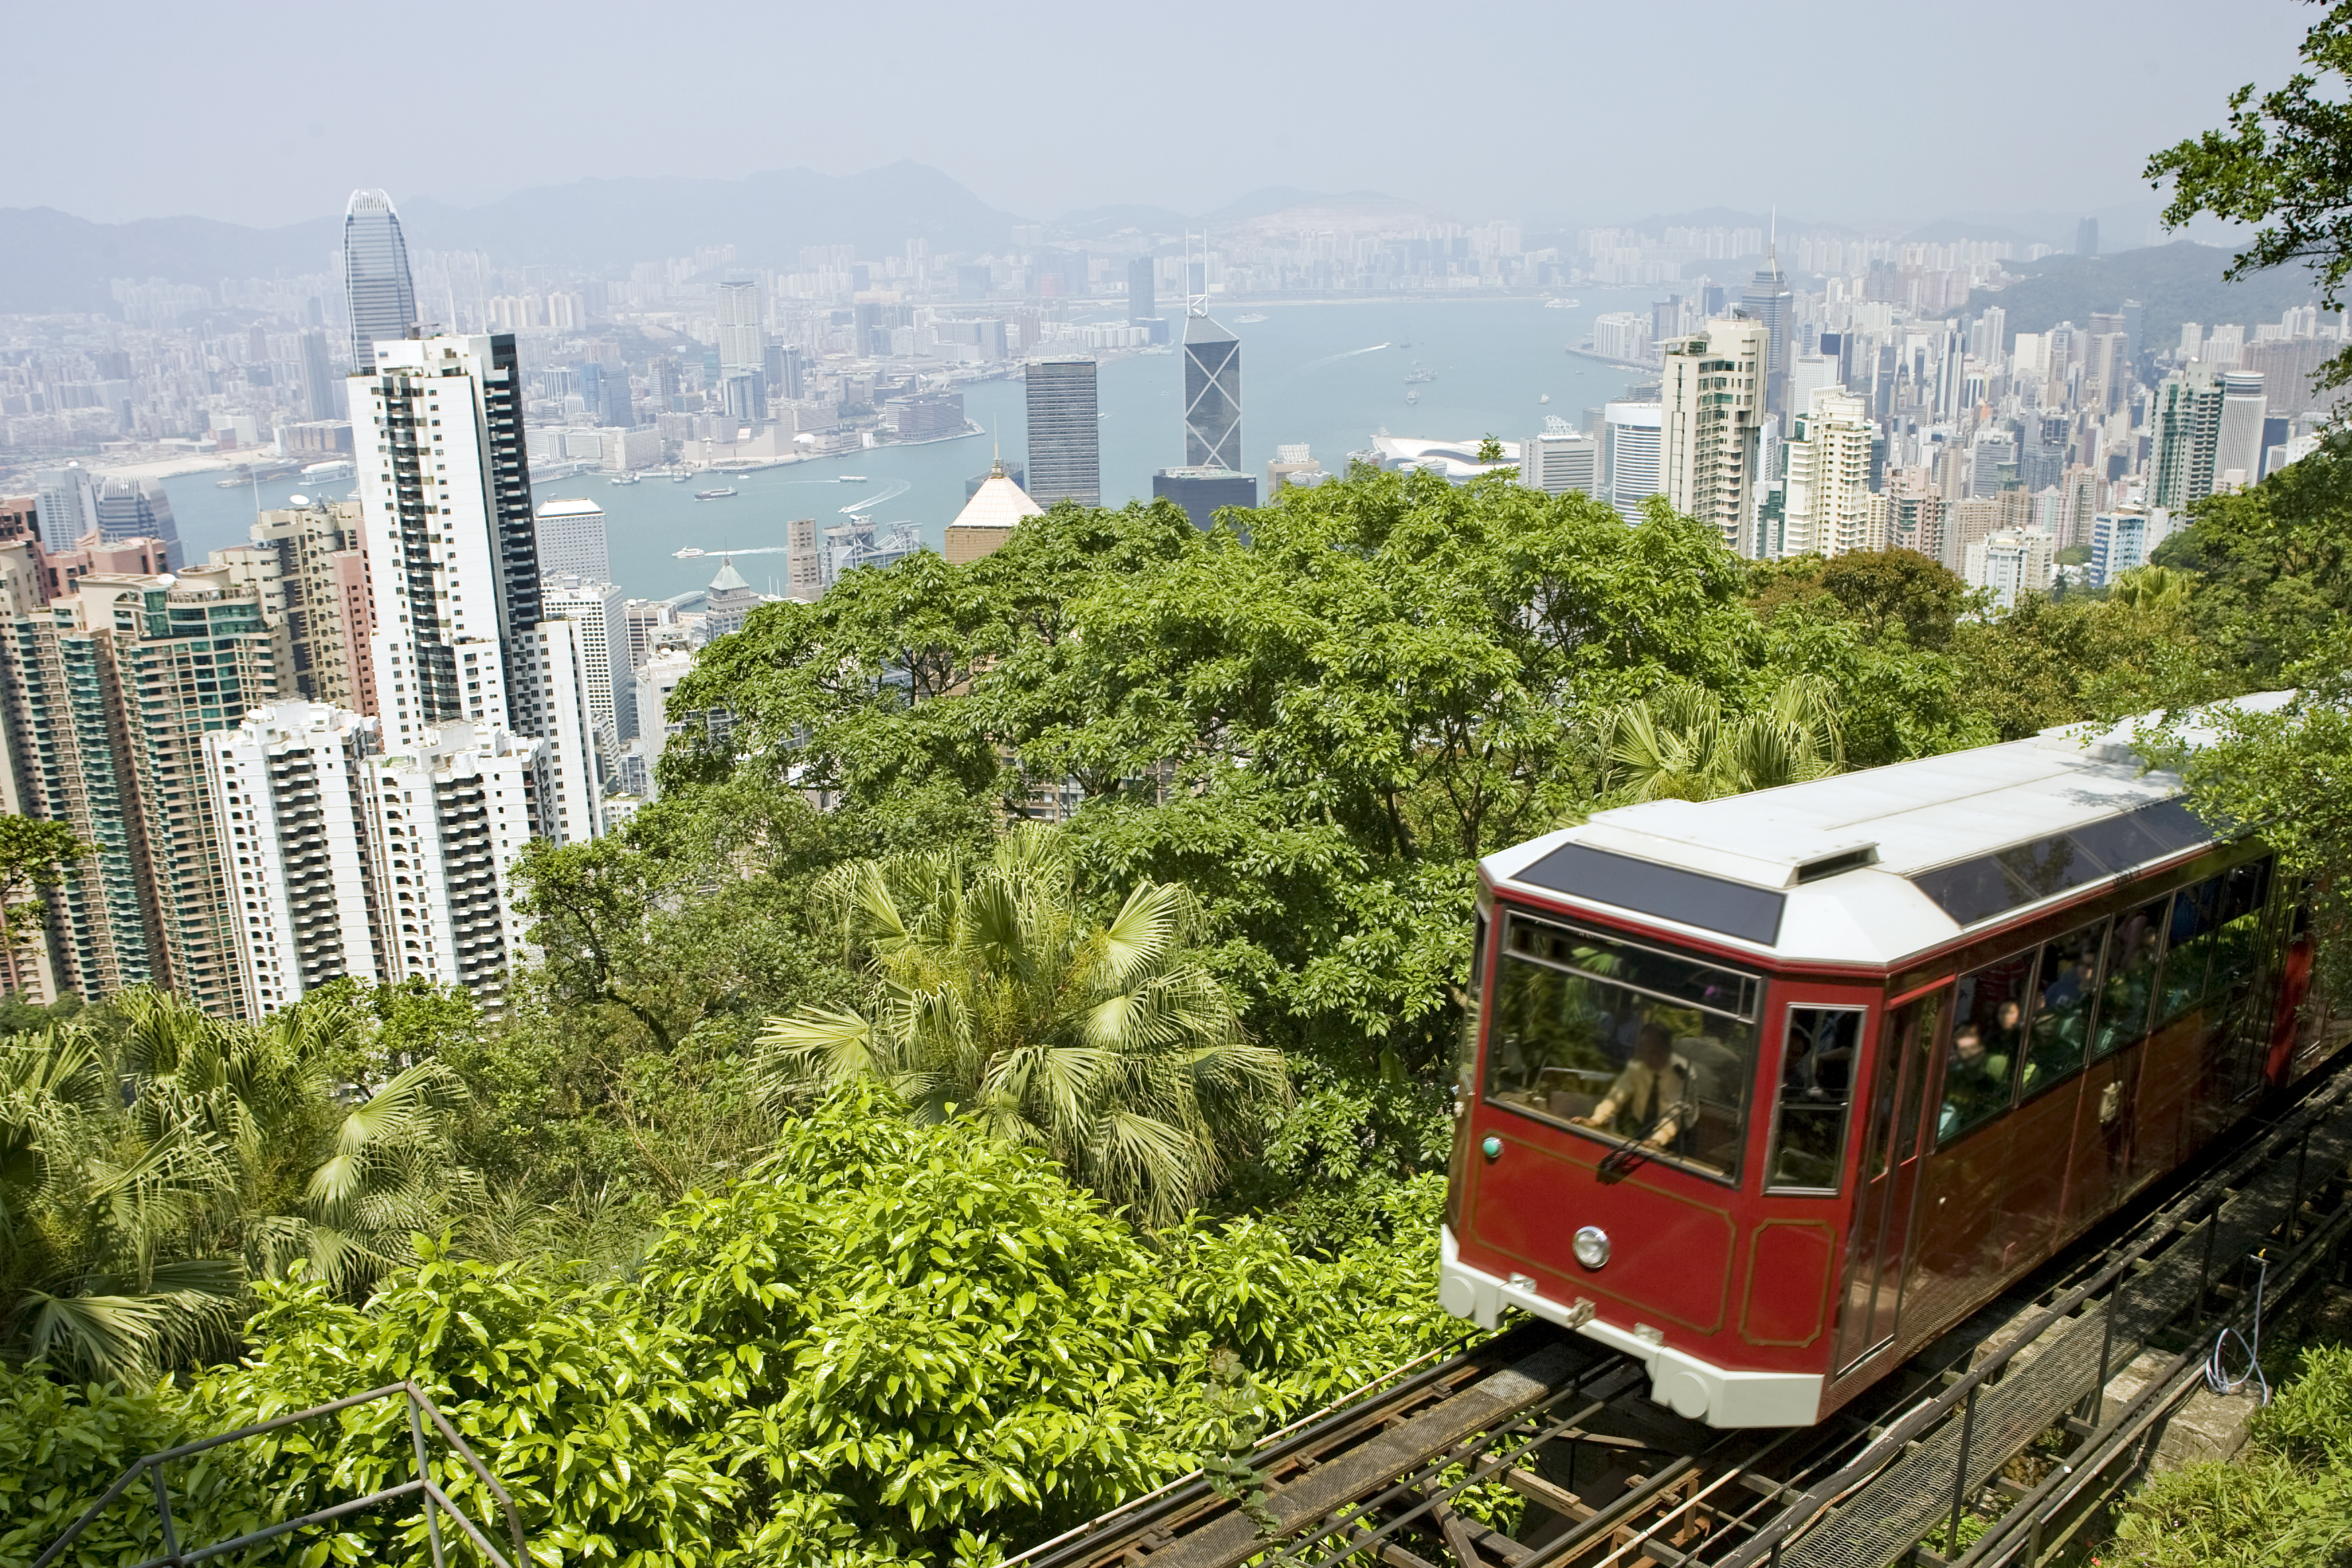 View over Hong Kong